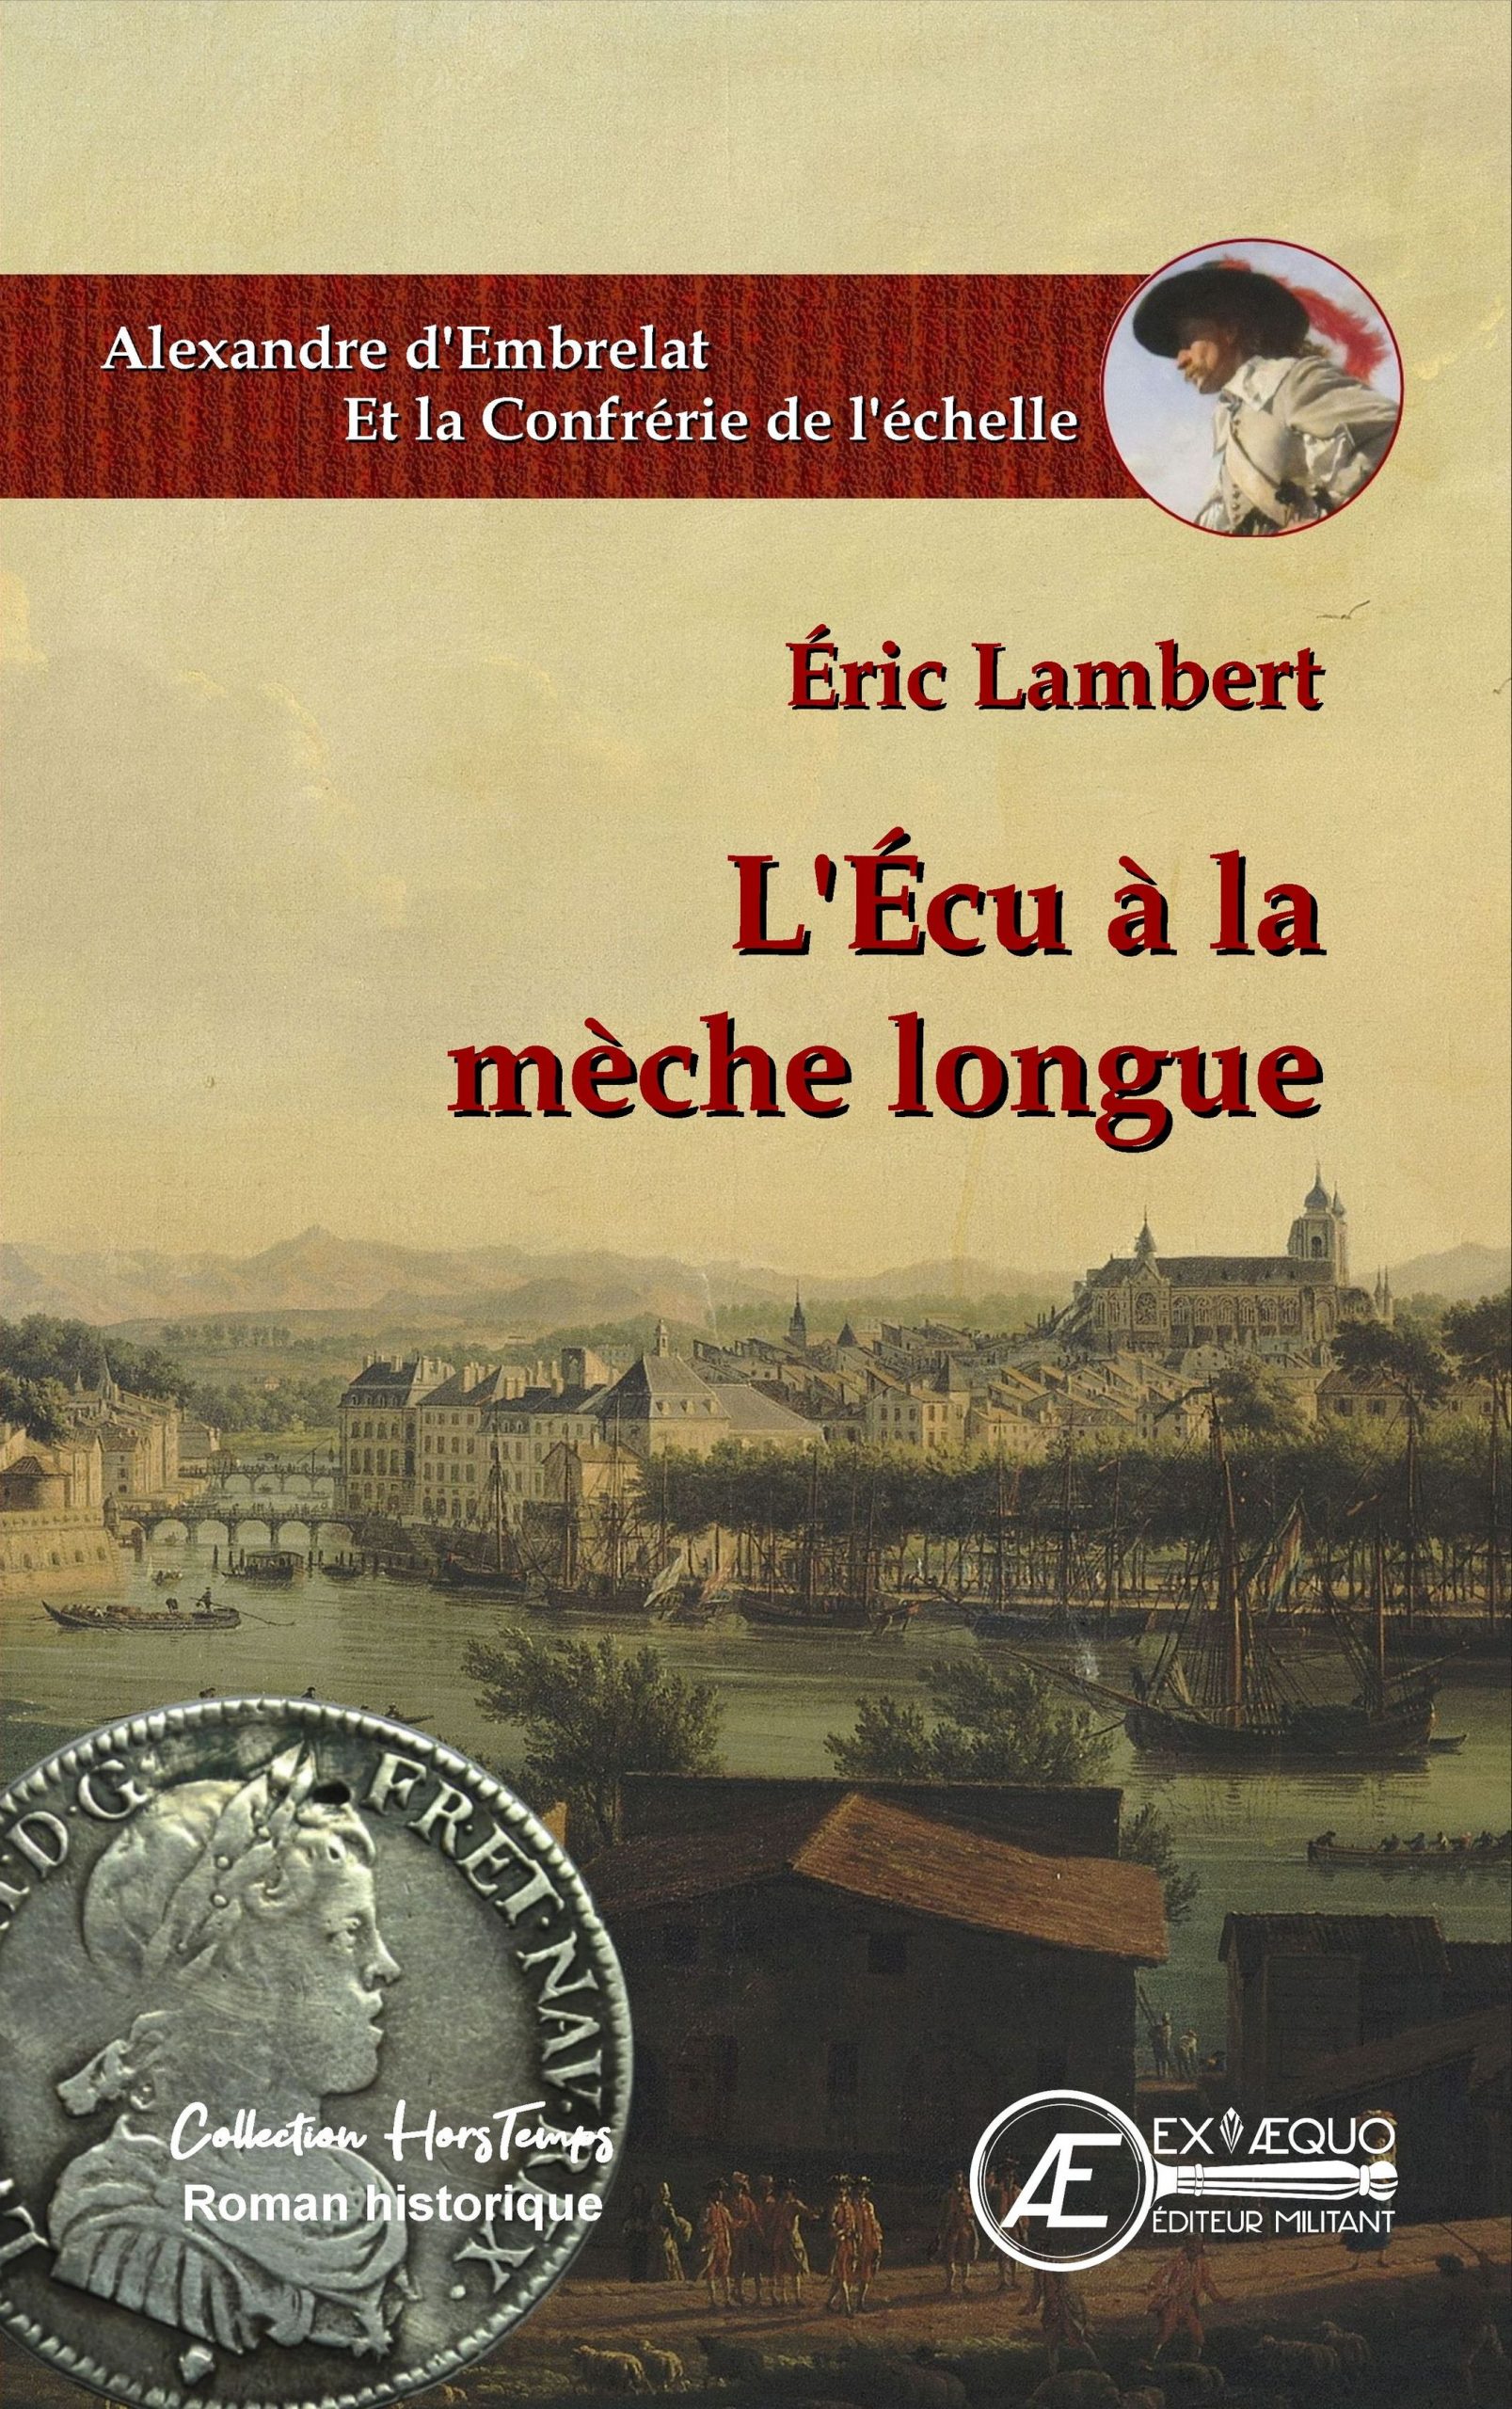 You are currently viewing L’écu à la mèche longue, d’Eric Lambert